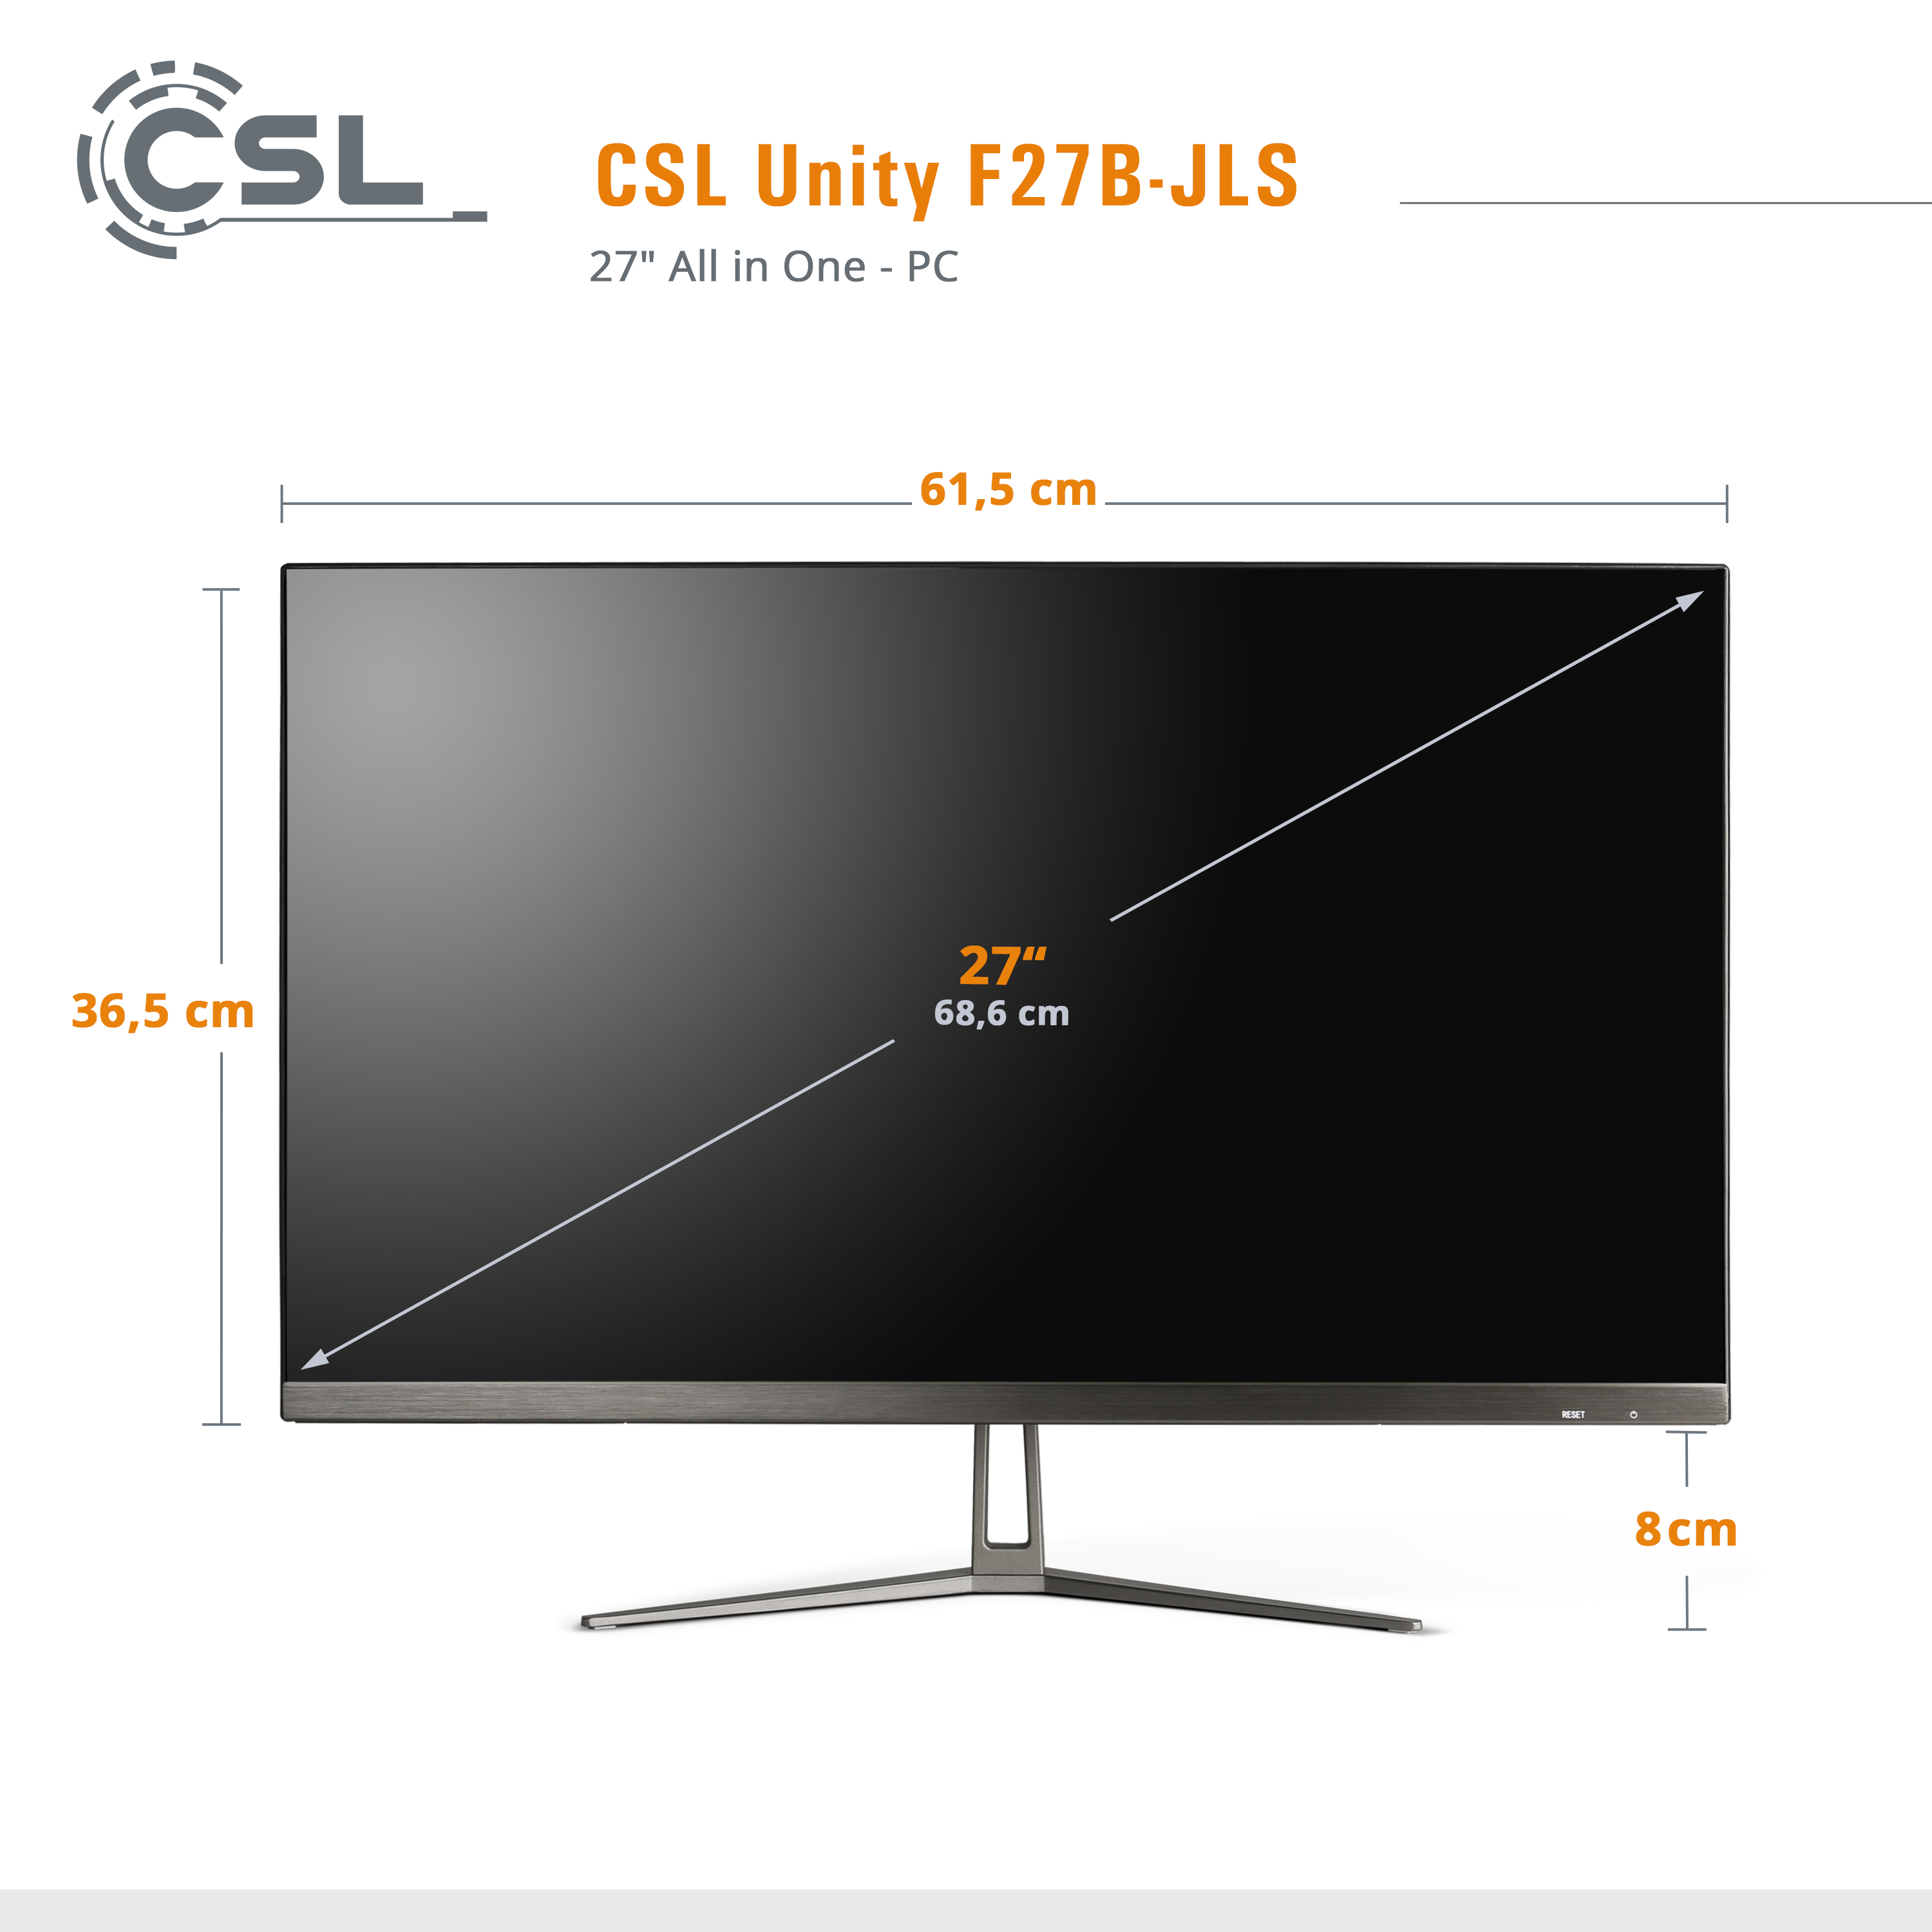 CSL Unity F27B-JLS Pentium / GB UHD SSD, GB / Pro, GB Intel® 27 10 RAM 8 2000 2000 mit / GB Display, All-in-One-PC Win Graphics, RAM, Zoll 8 schwarz